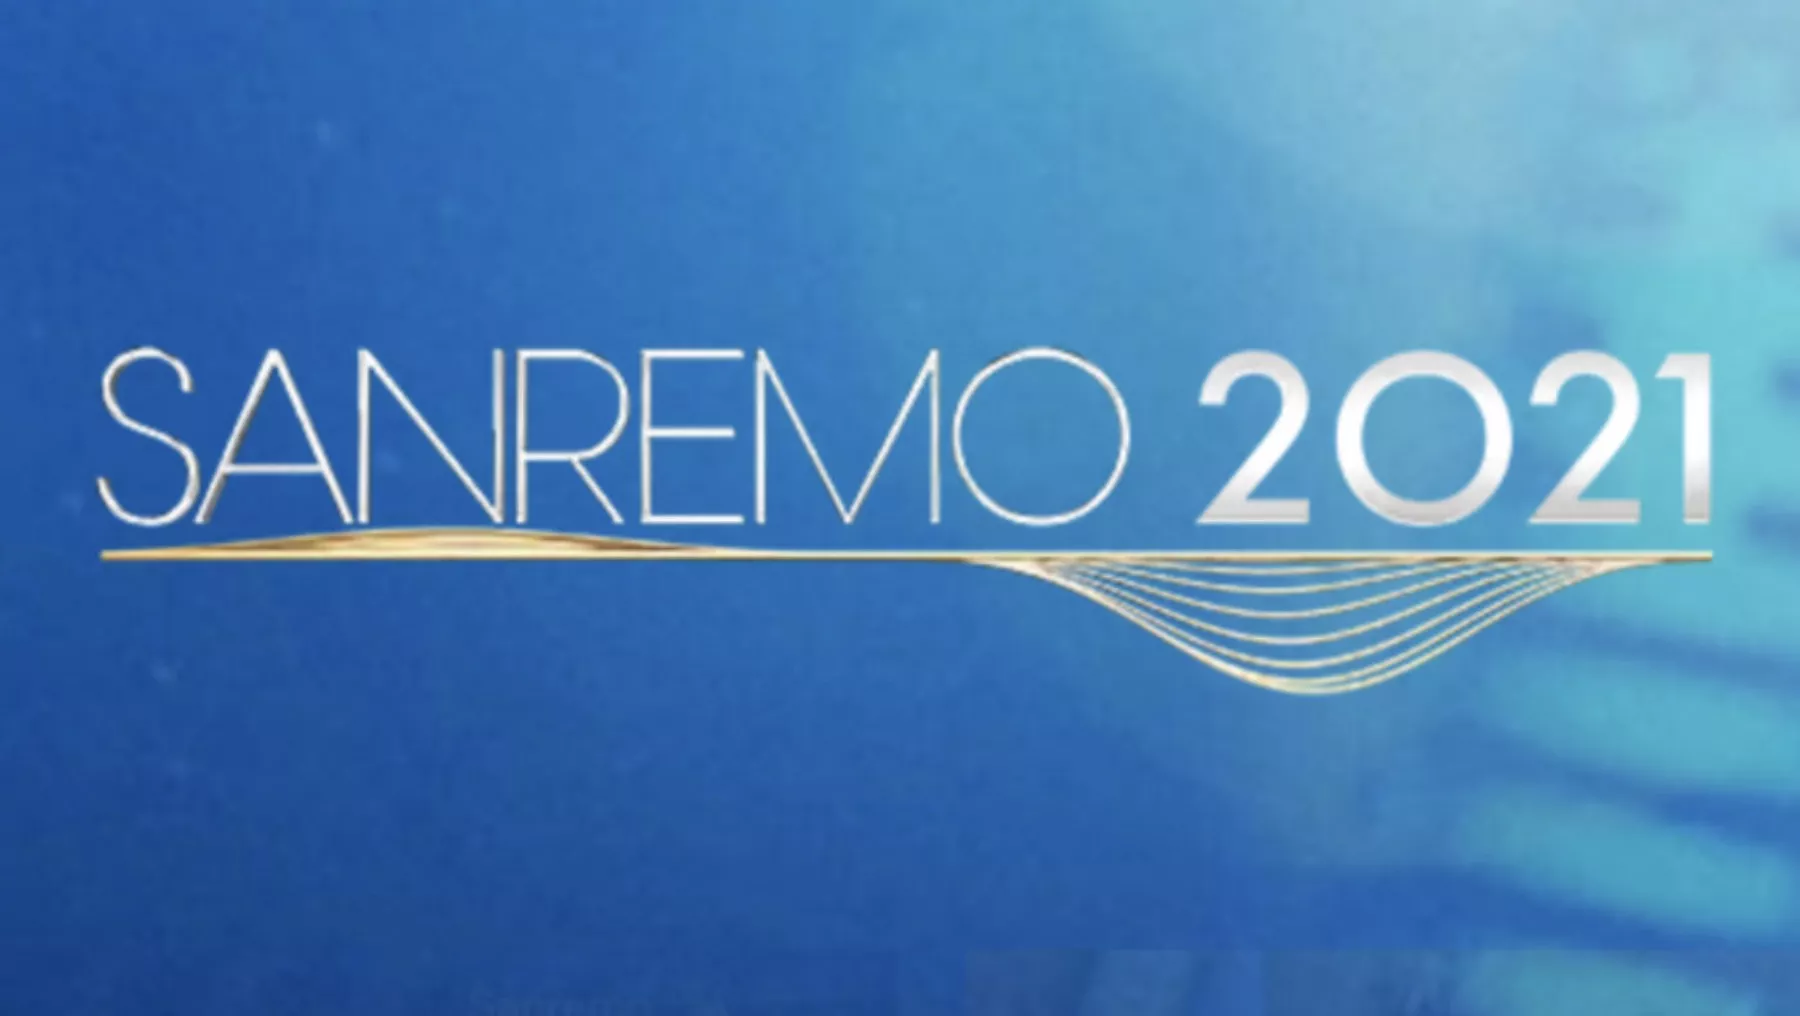 Sanremo 2021: data, concorrenti e serate